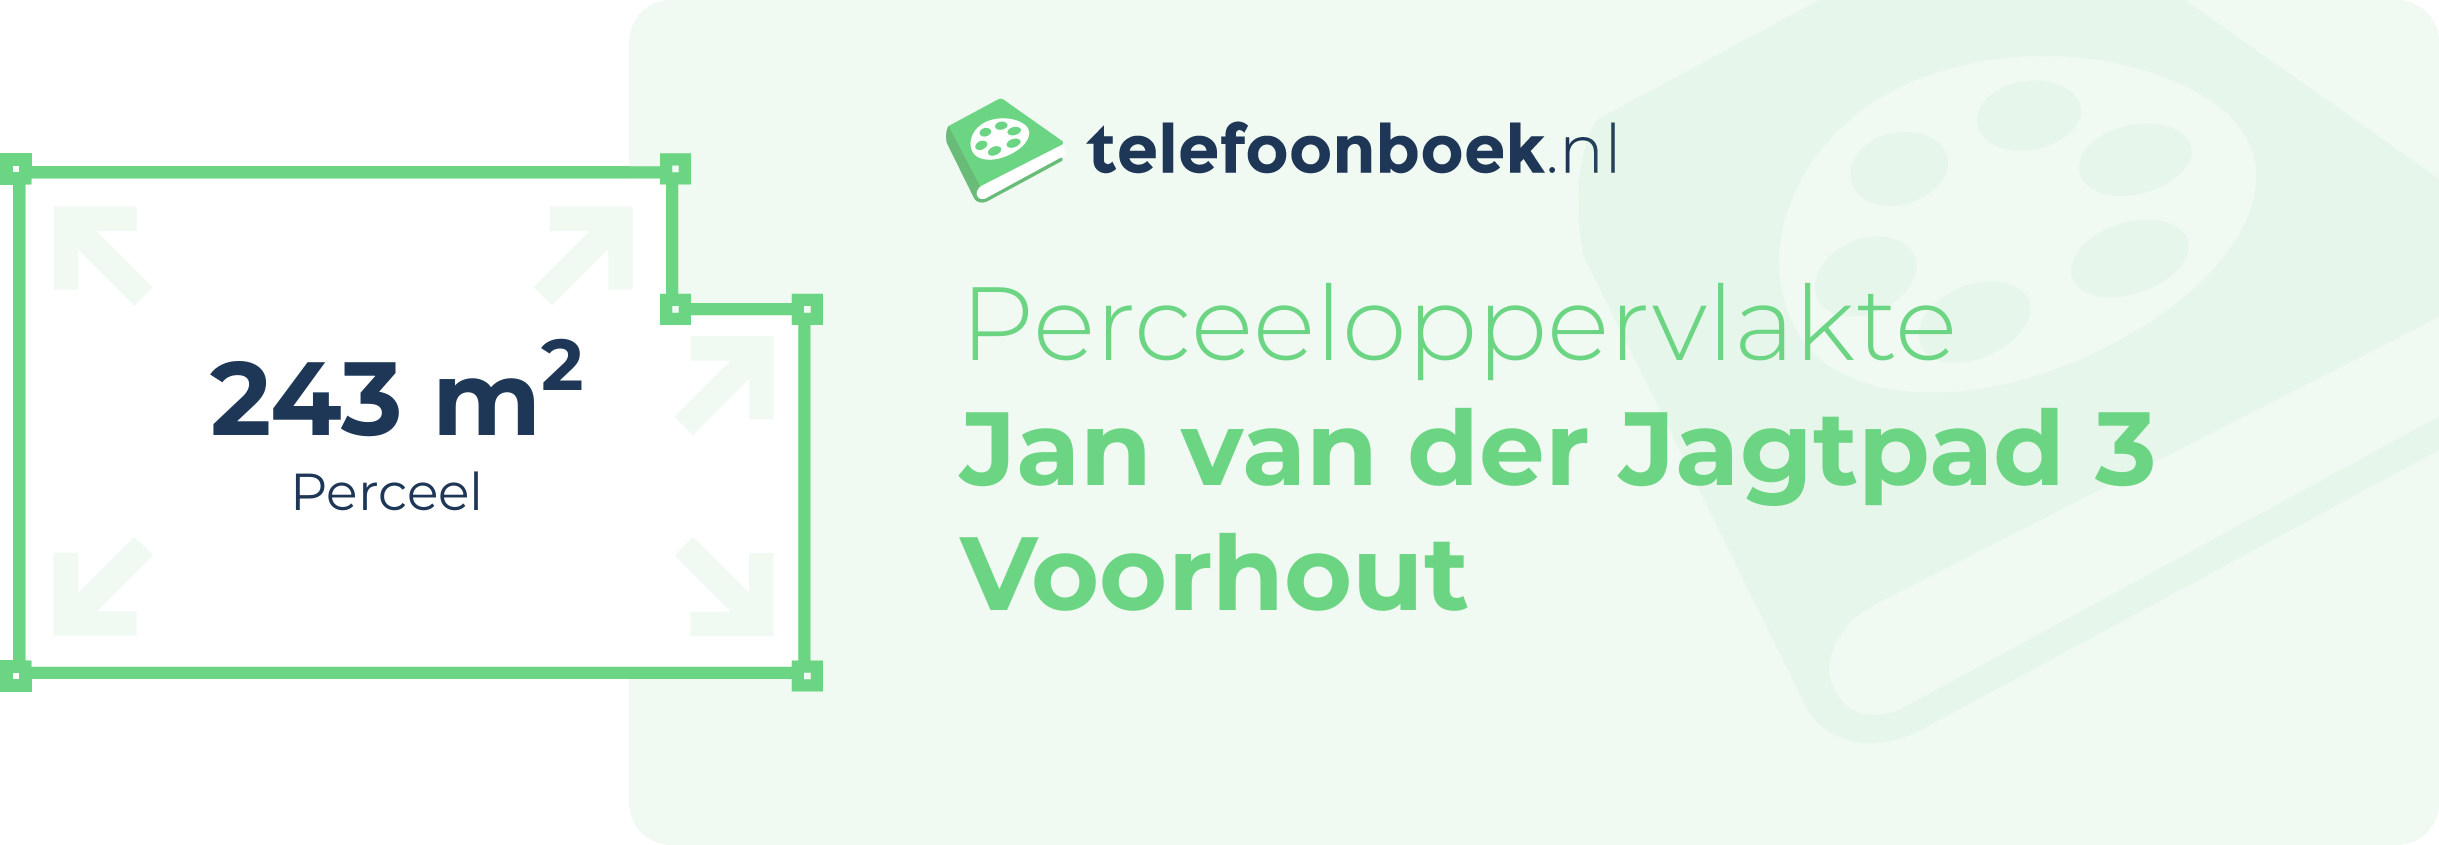 Perceeloppervlakte Jan Van Der Jagtpad 3 Voorhout